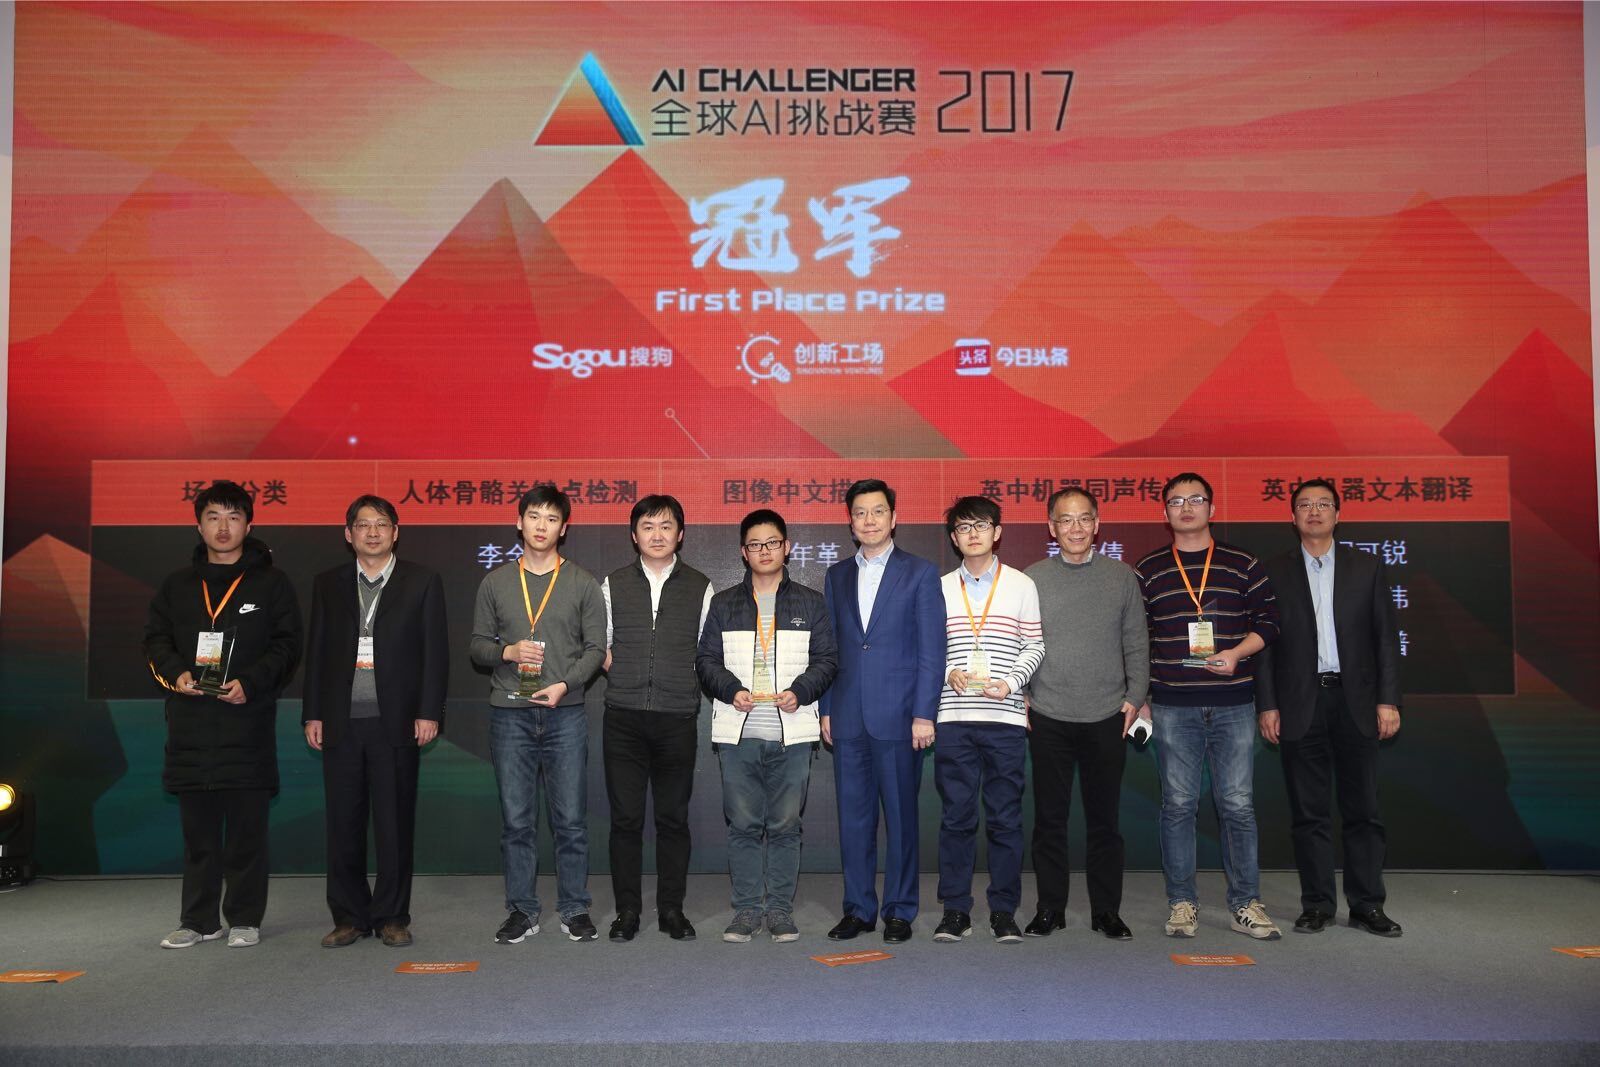 由创新工场、搜狗和今日头条主办的首届全球AI挑战赛落幕  ,目标成为全球最具影响力的竞赛平台